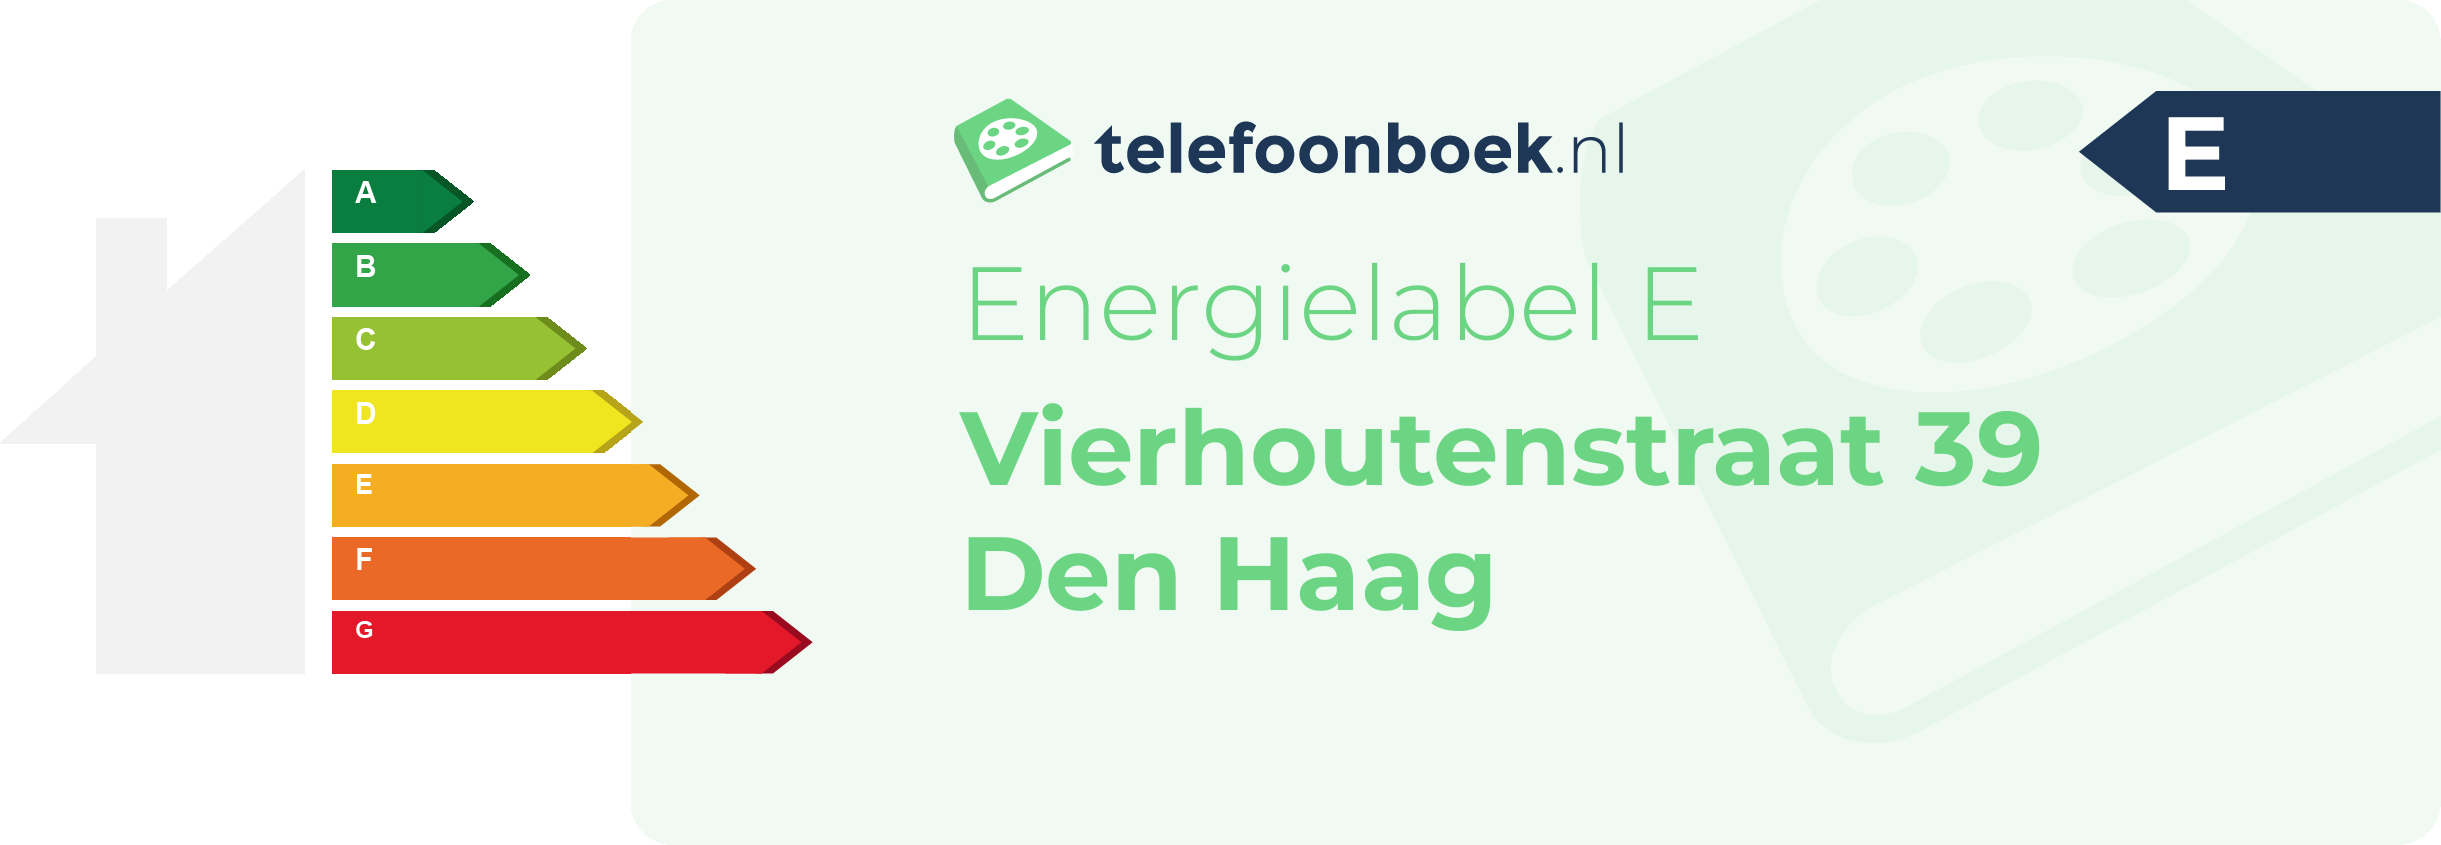 Energielabel Vierhoutenstraat 39 Den Haag